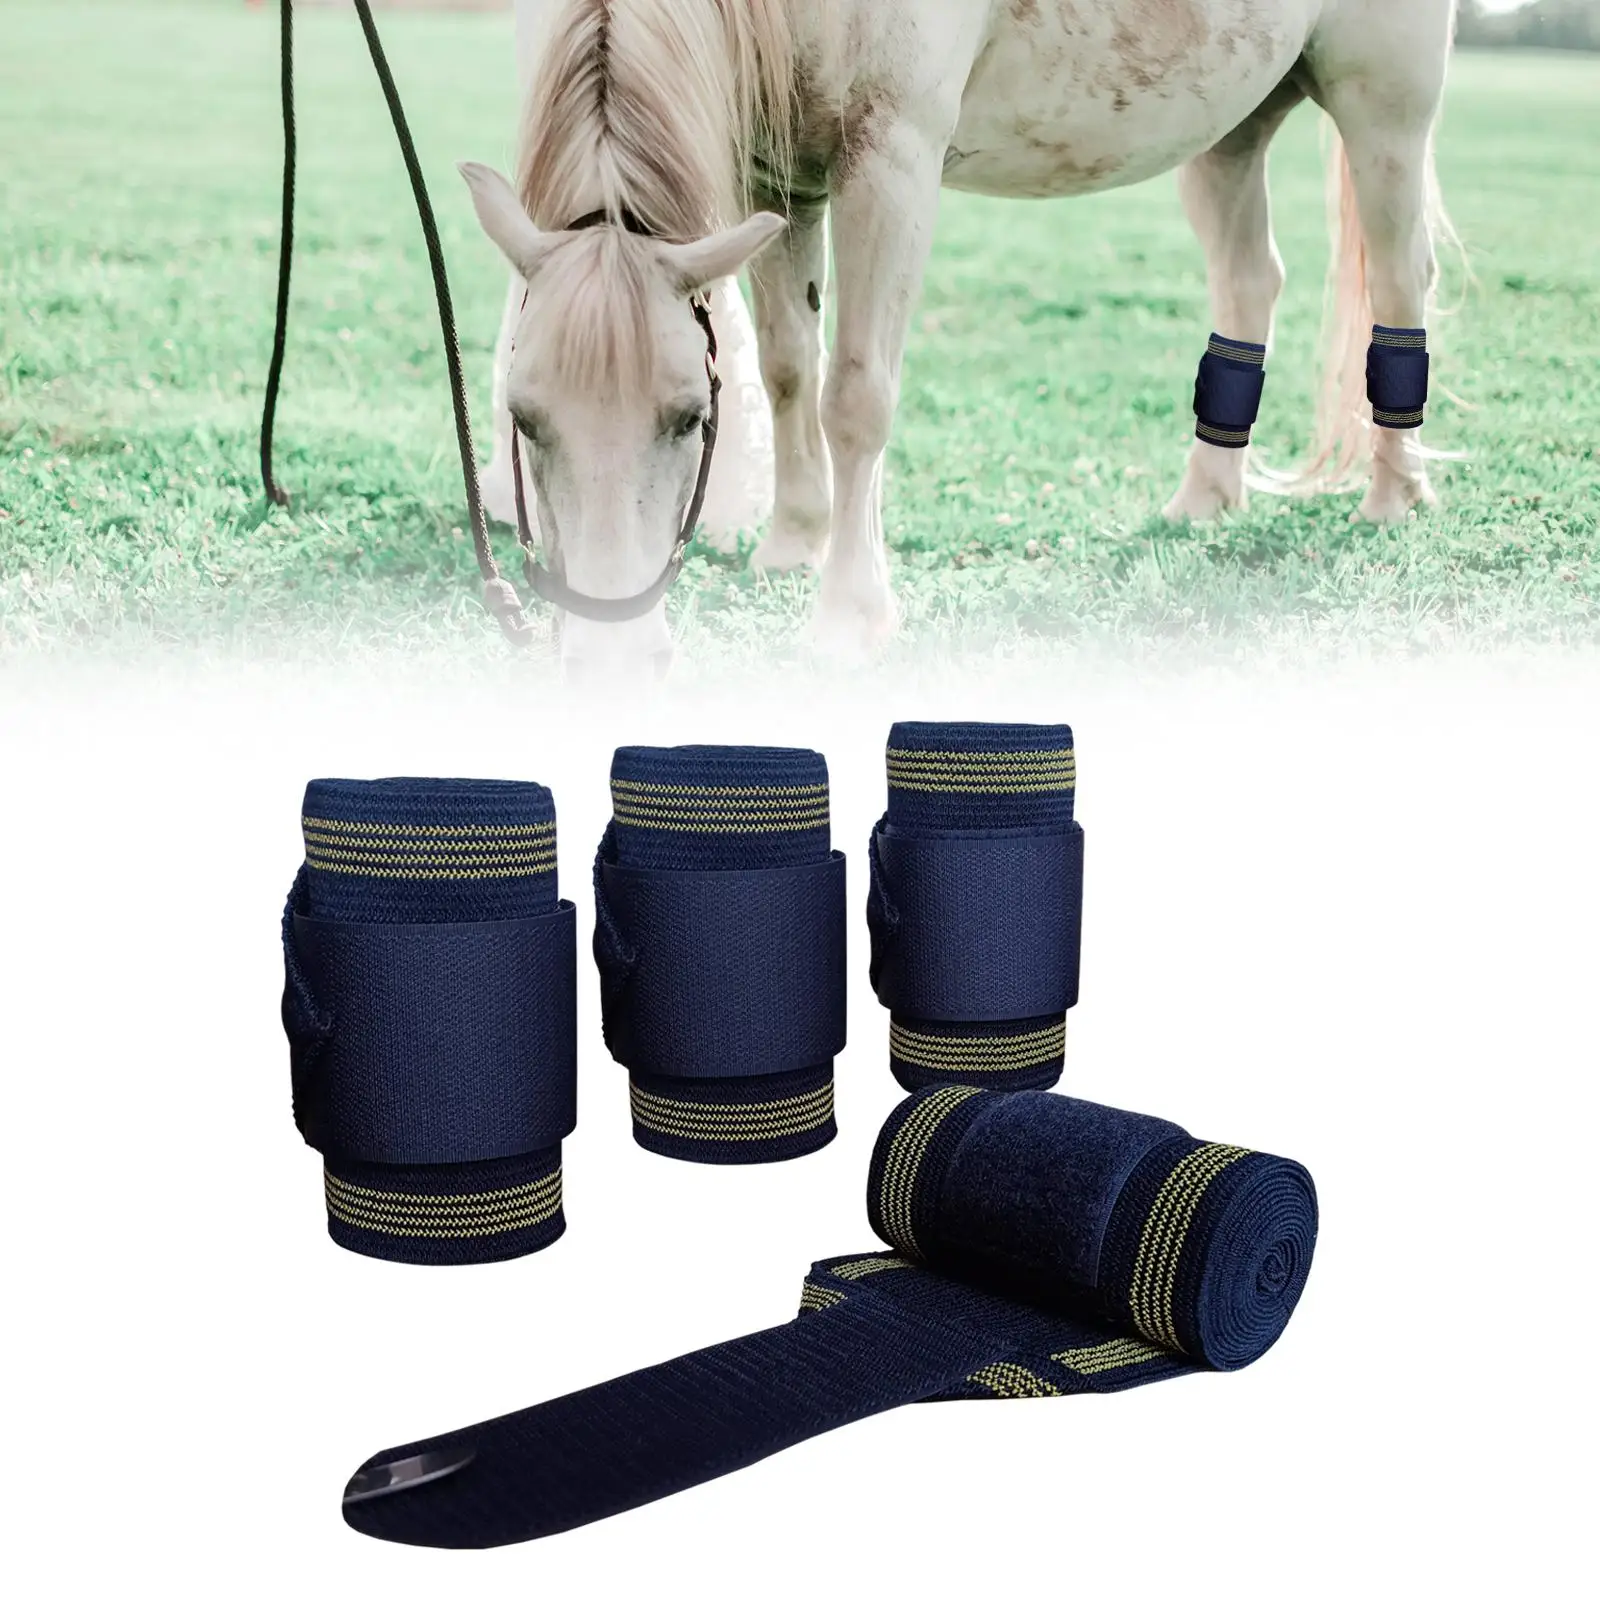 4Pieces Horse Leg Wraps Horse Support Horse Leggings Wrap Riding Race Leg Protection Wraps Leg Guards Equestrian Accessories